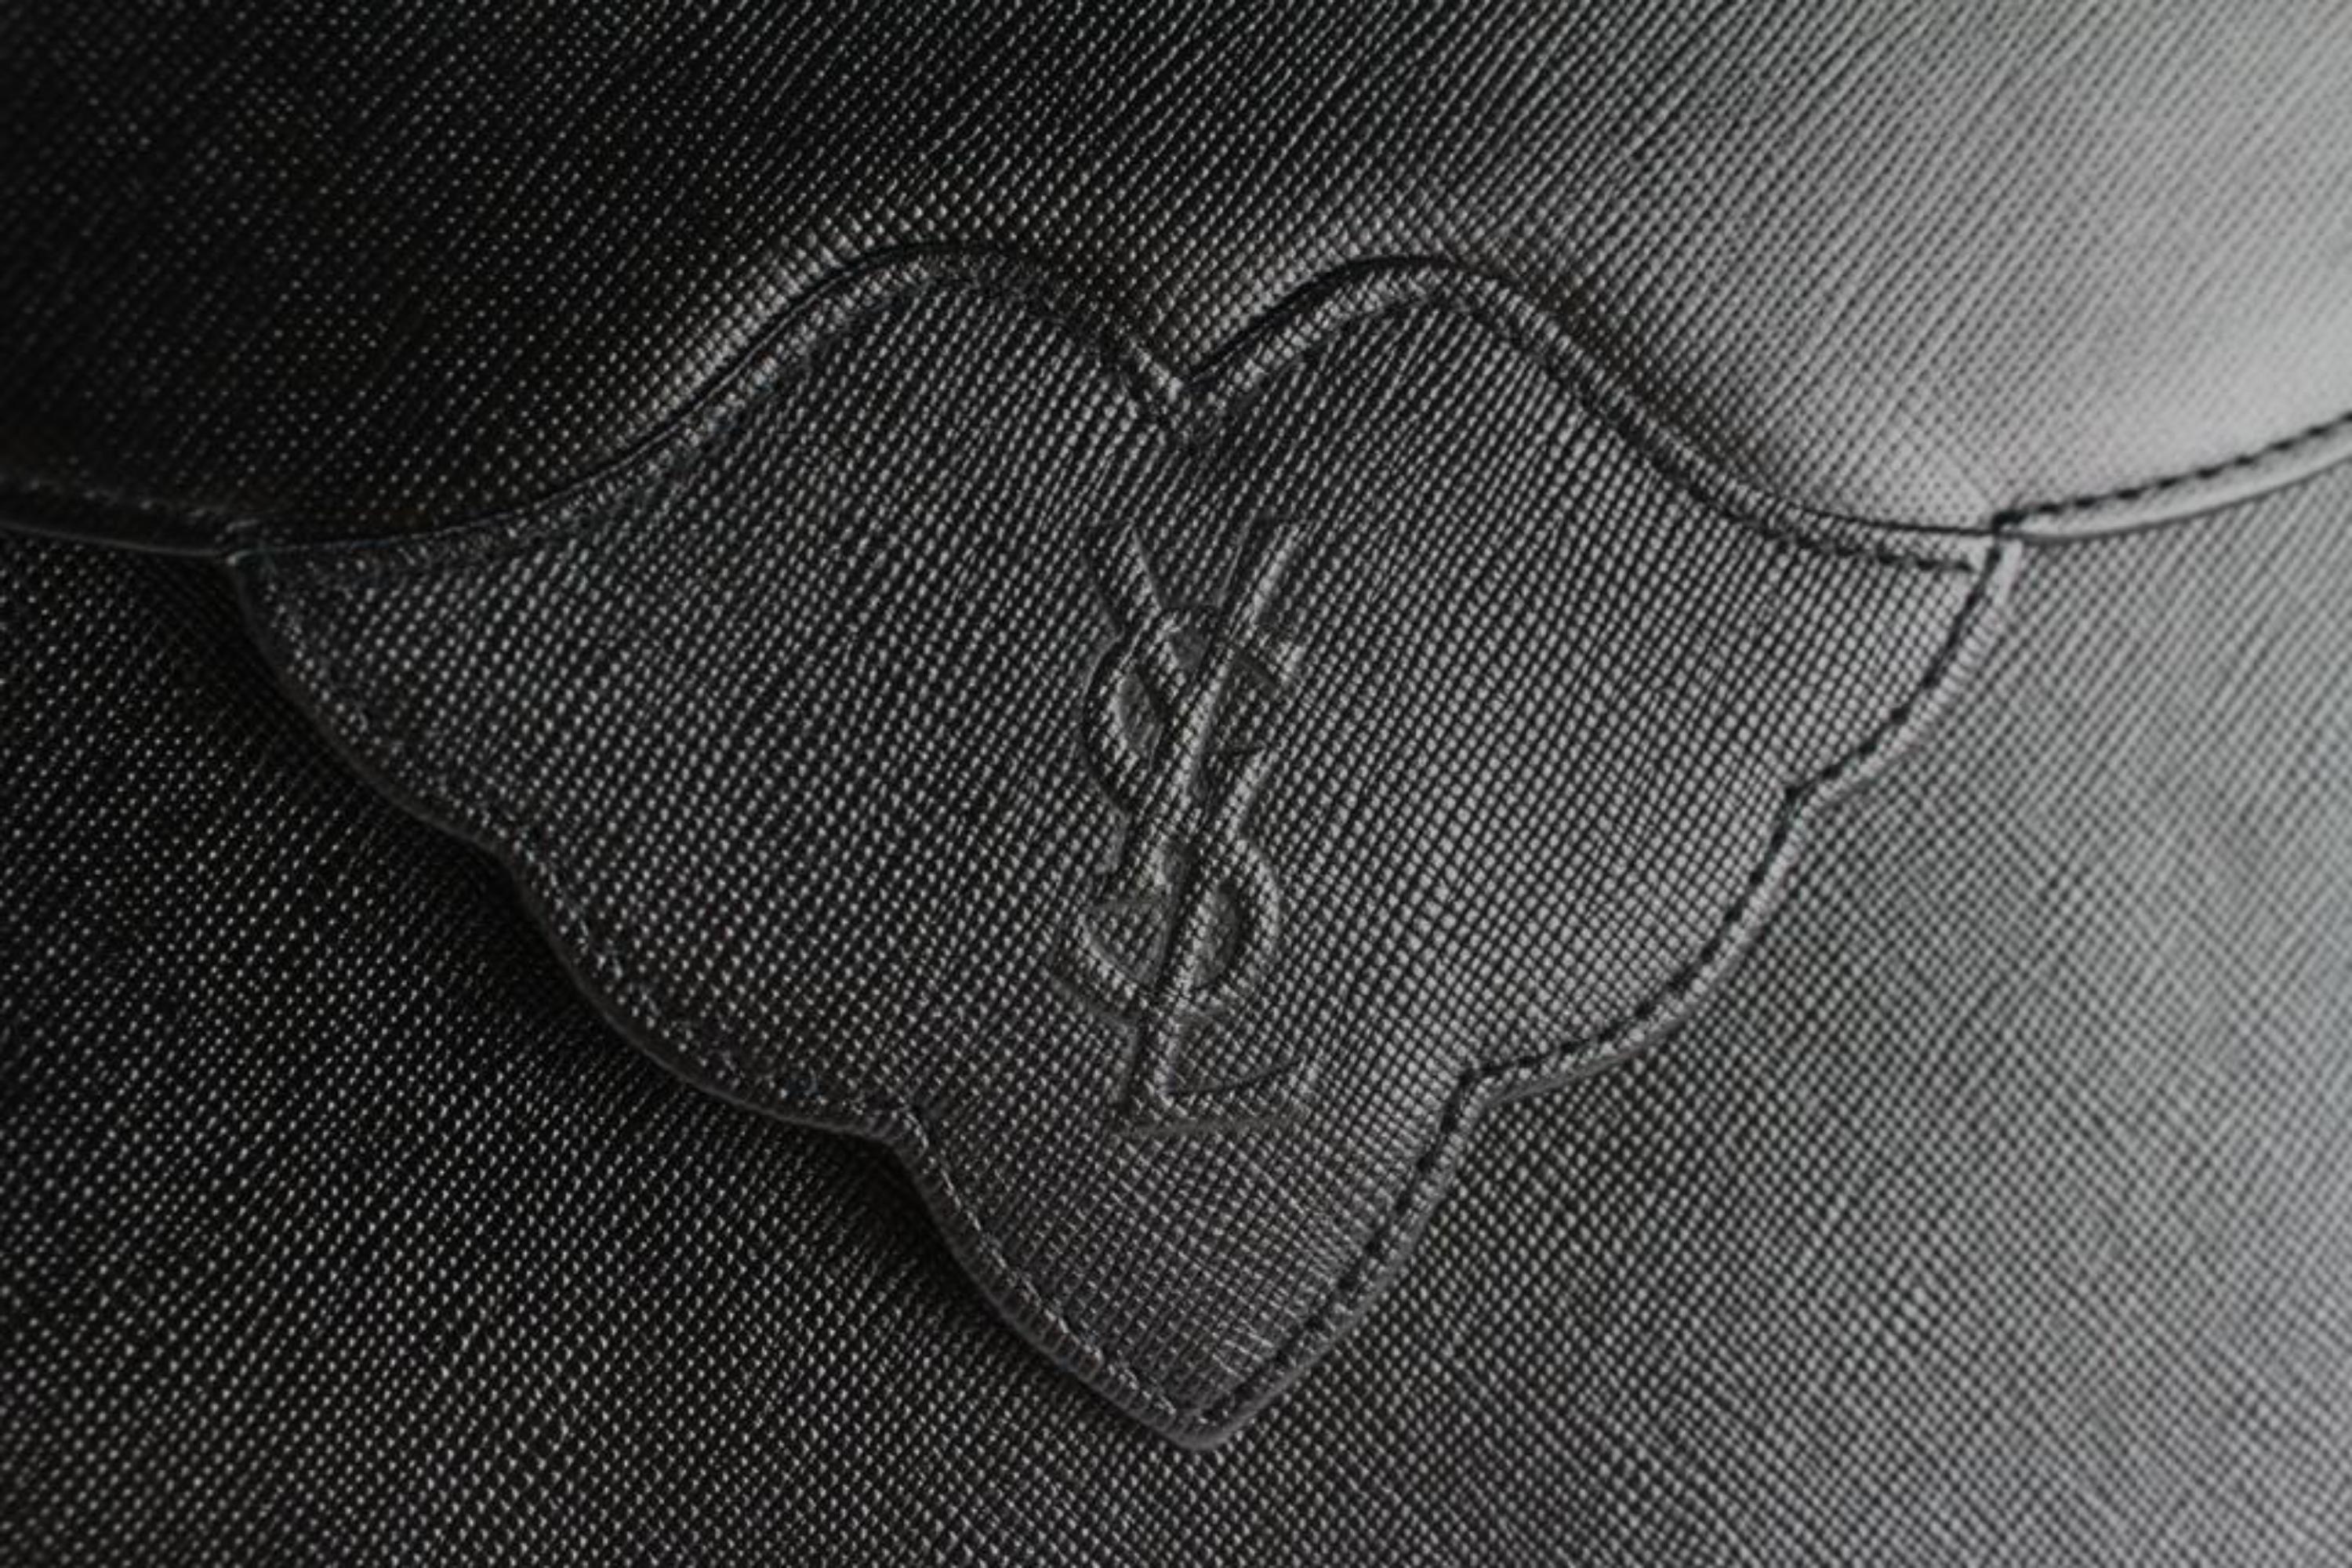 Saint Laurent Monogram Envelope Ysl Flap 14mz1812 Black Leather Clutch For Sale 6